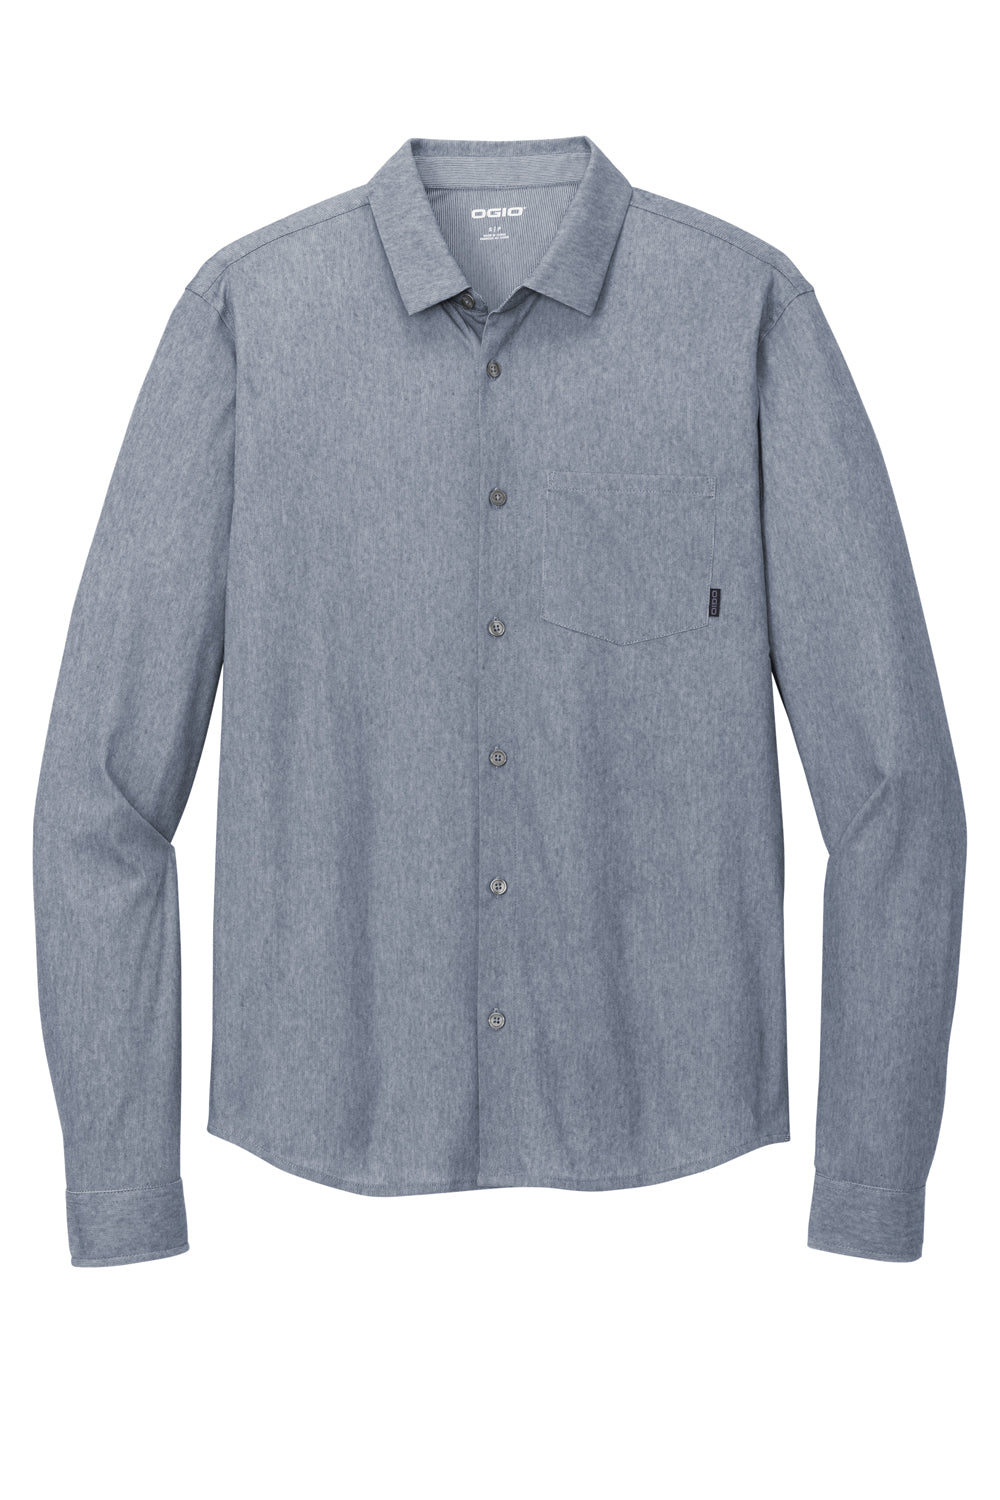 Ogio Mens Extend Long Sleeve Button Down Shirt Heather Deep Blue Flat Front